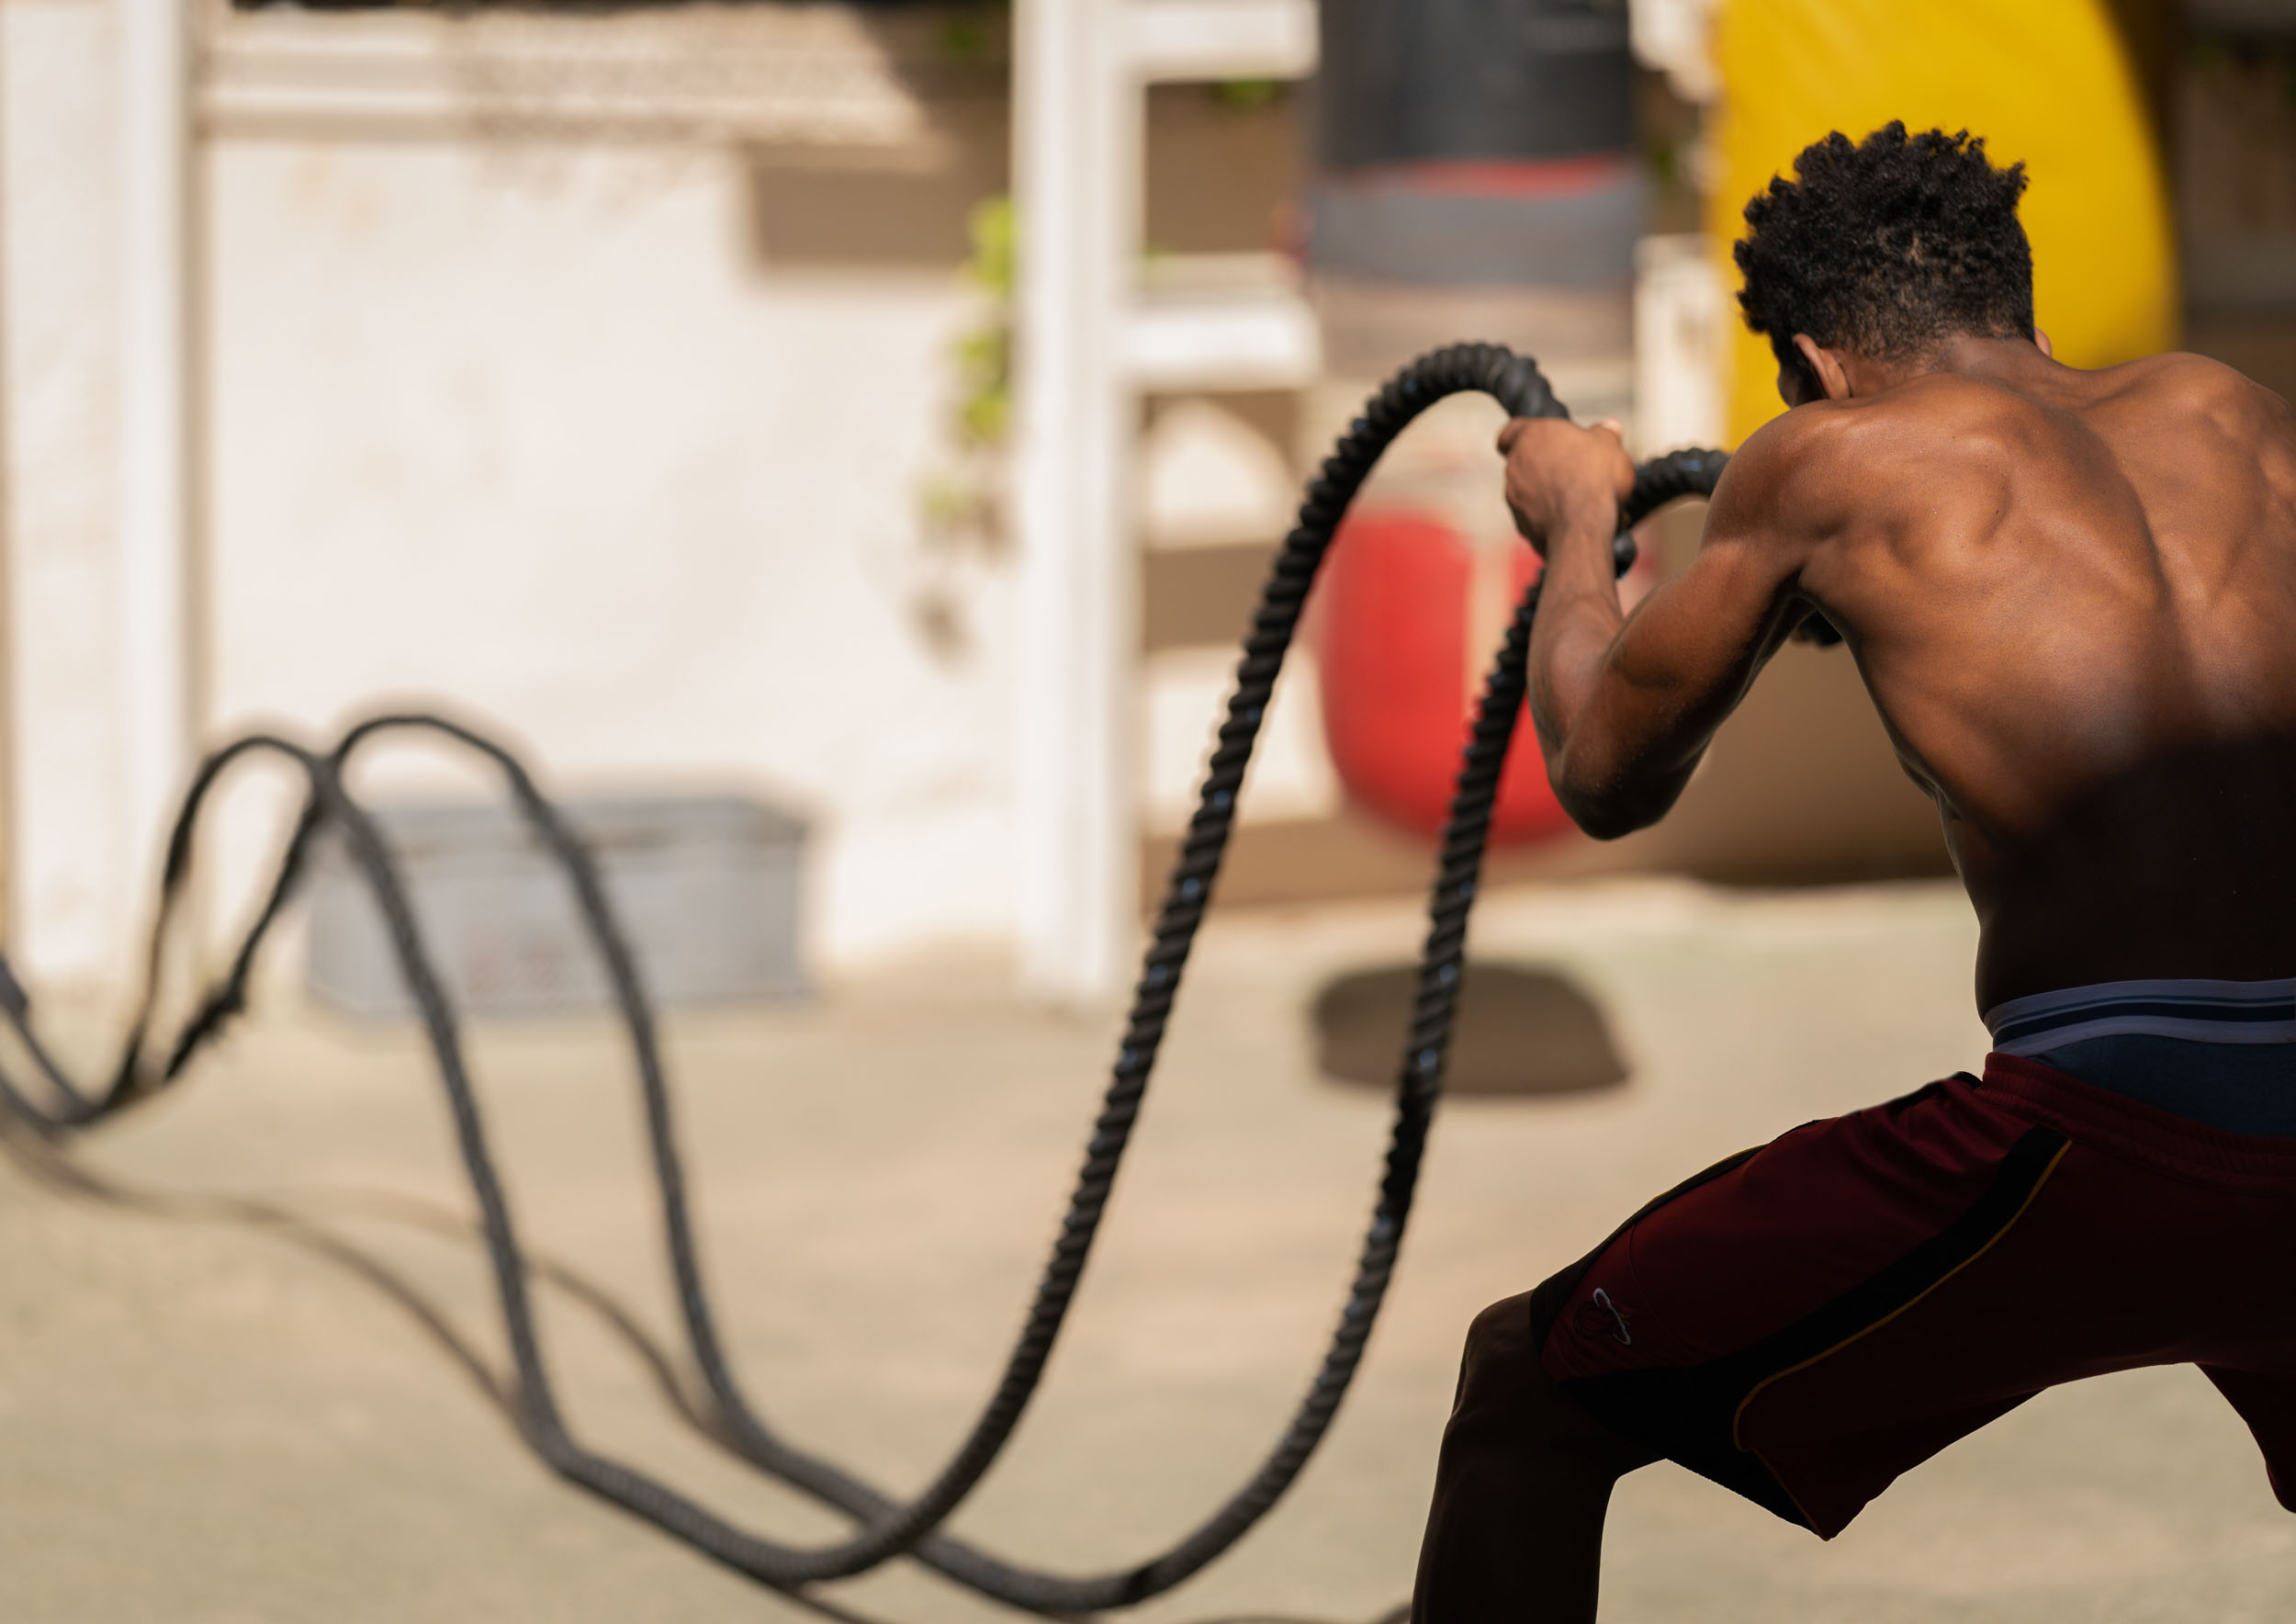 Boxing-Cuba-Havana-gym-16-web.JPG